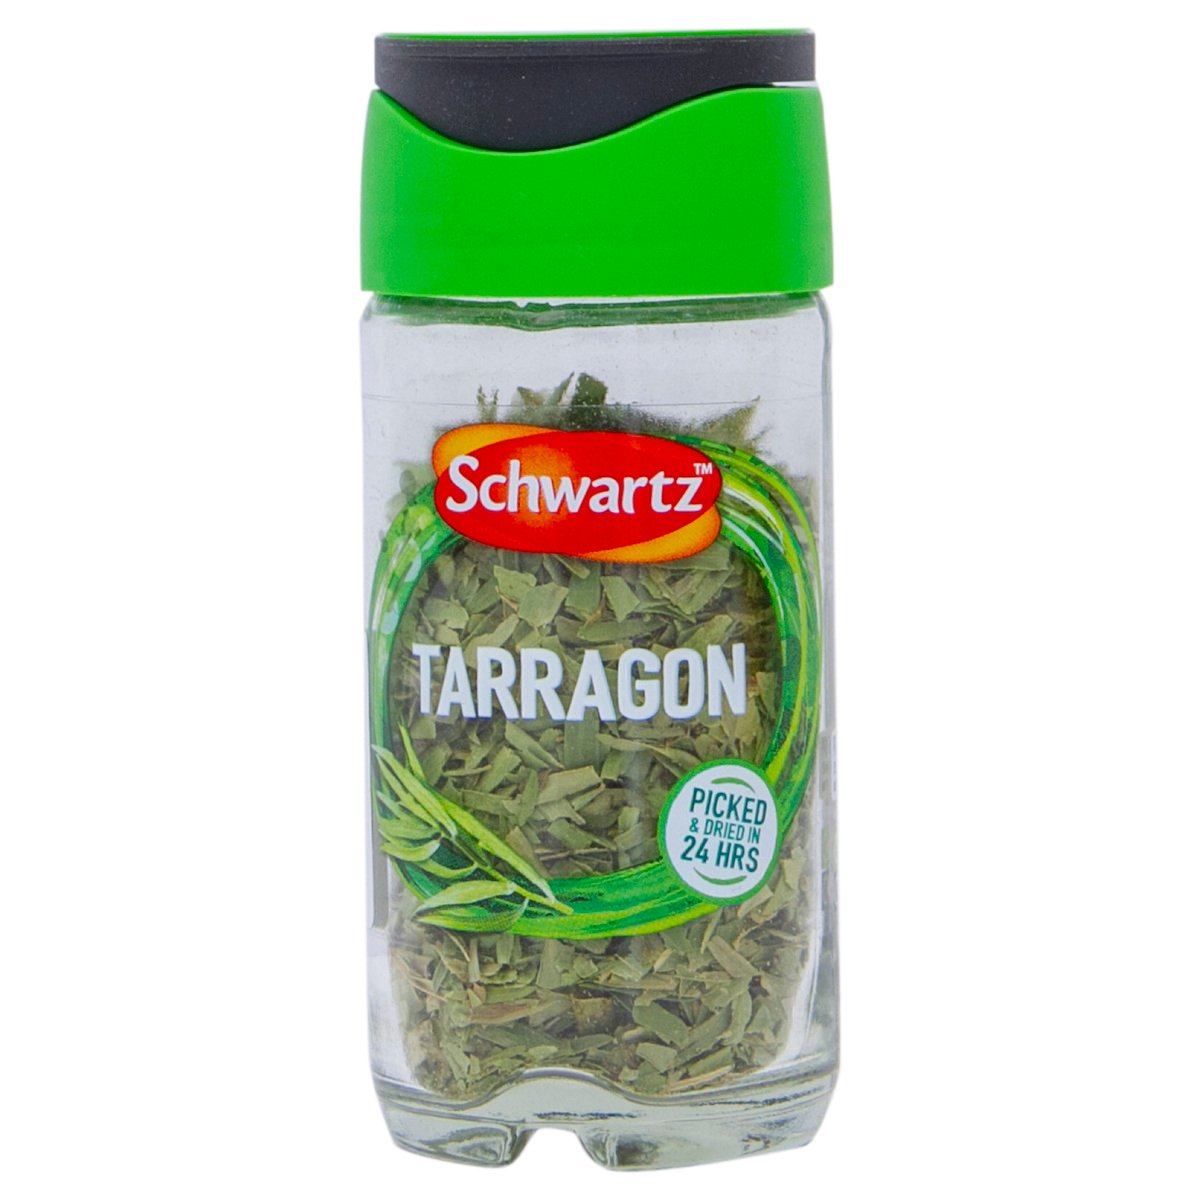 Schwartz Tarragon 5 g